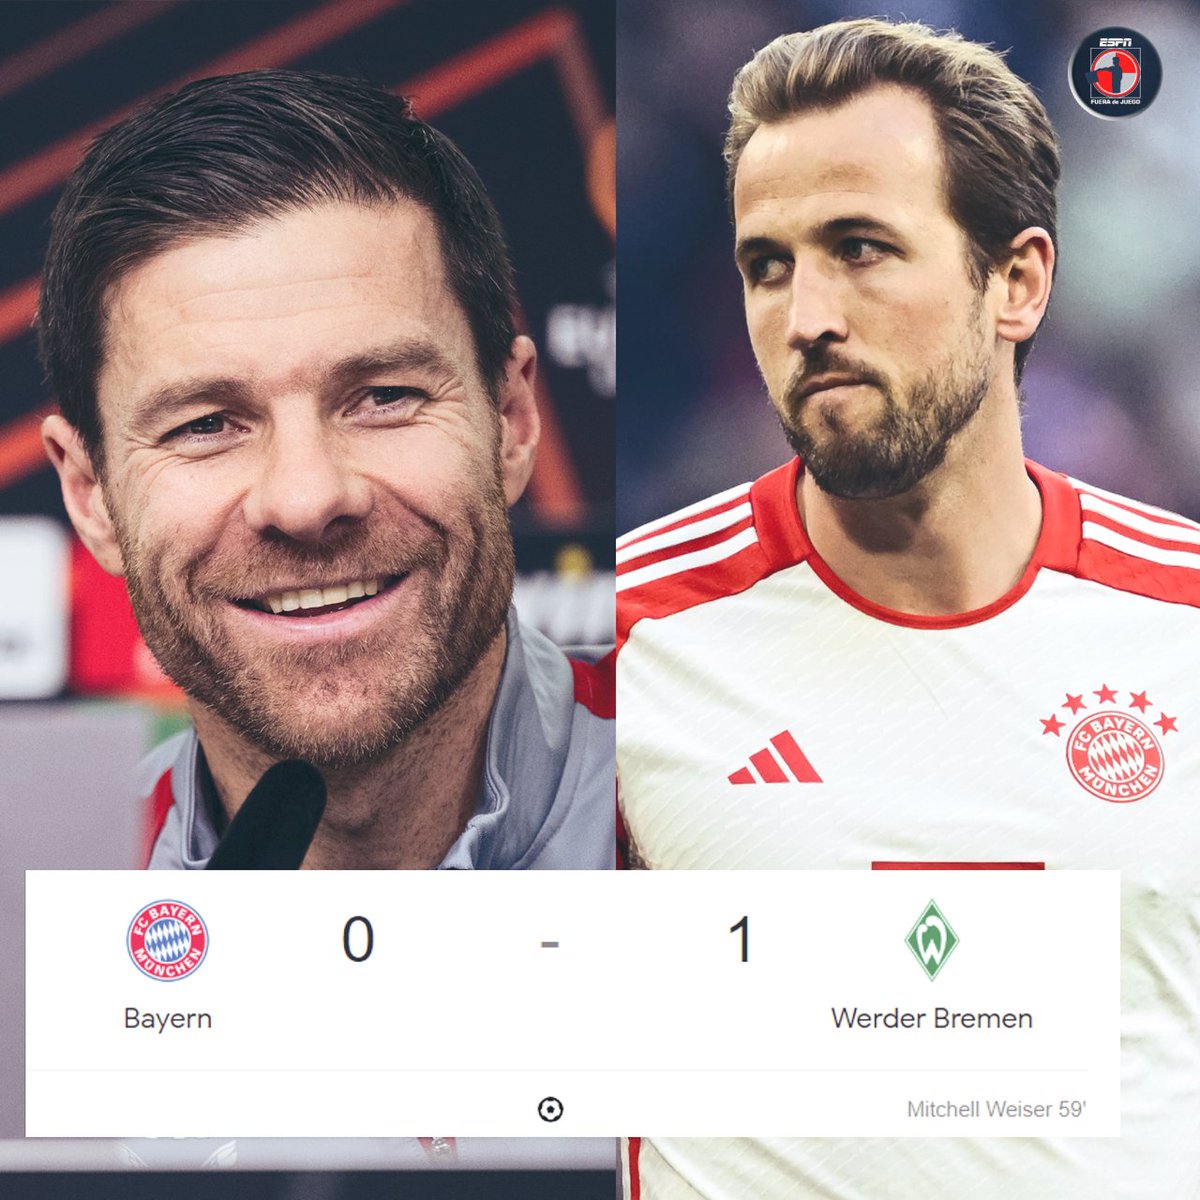 🔥 ¡EL BAYERN PIERDE EN CASA CON EL WERDER BREMEN! 😳 Sonrisas en Leverkusen y e equipo de Xabi Alonso se pone CON VENTAJA de 7 PUNTOS en la cima de la Bundesliga.